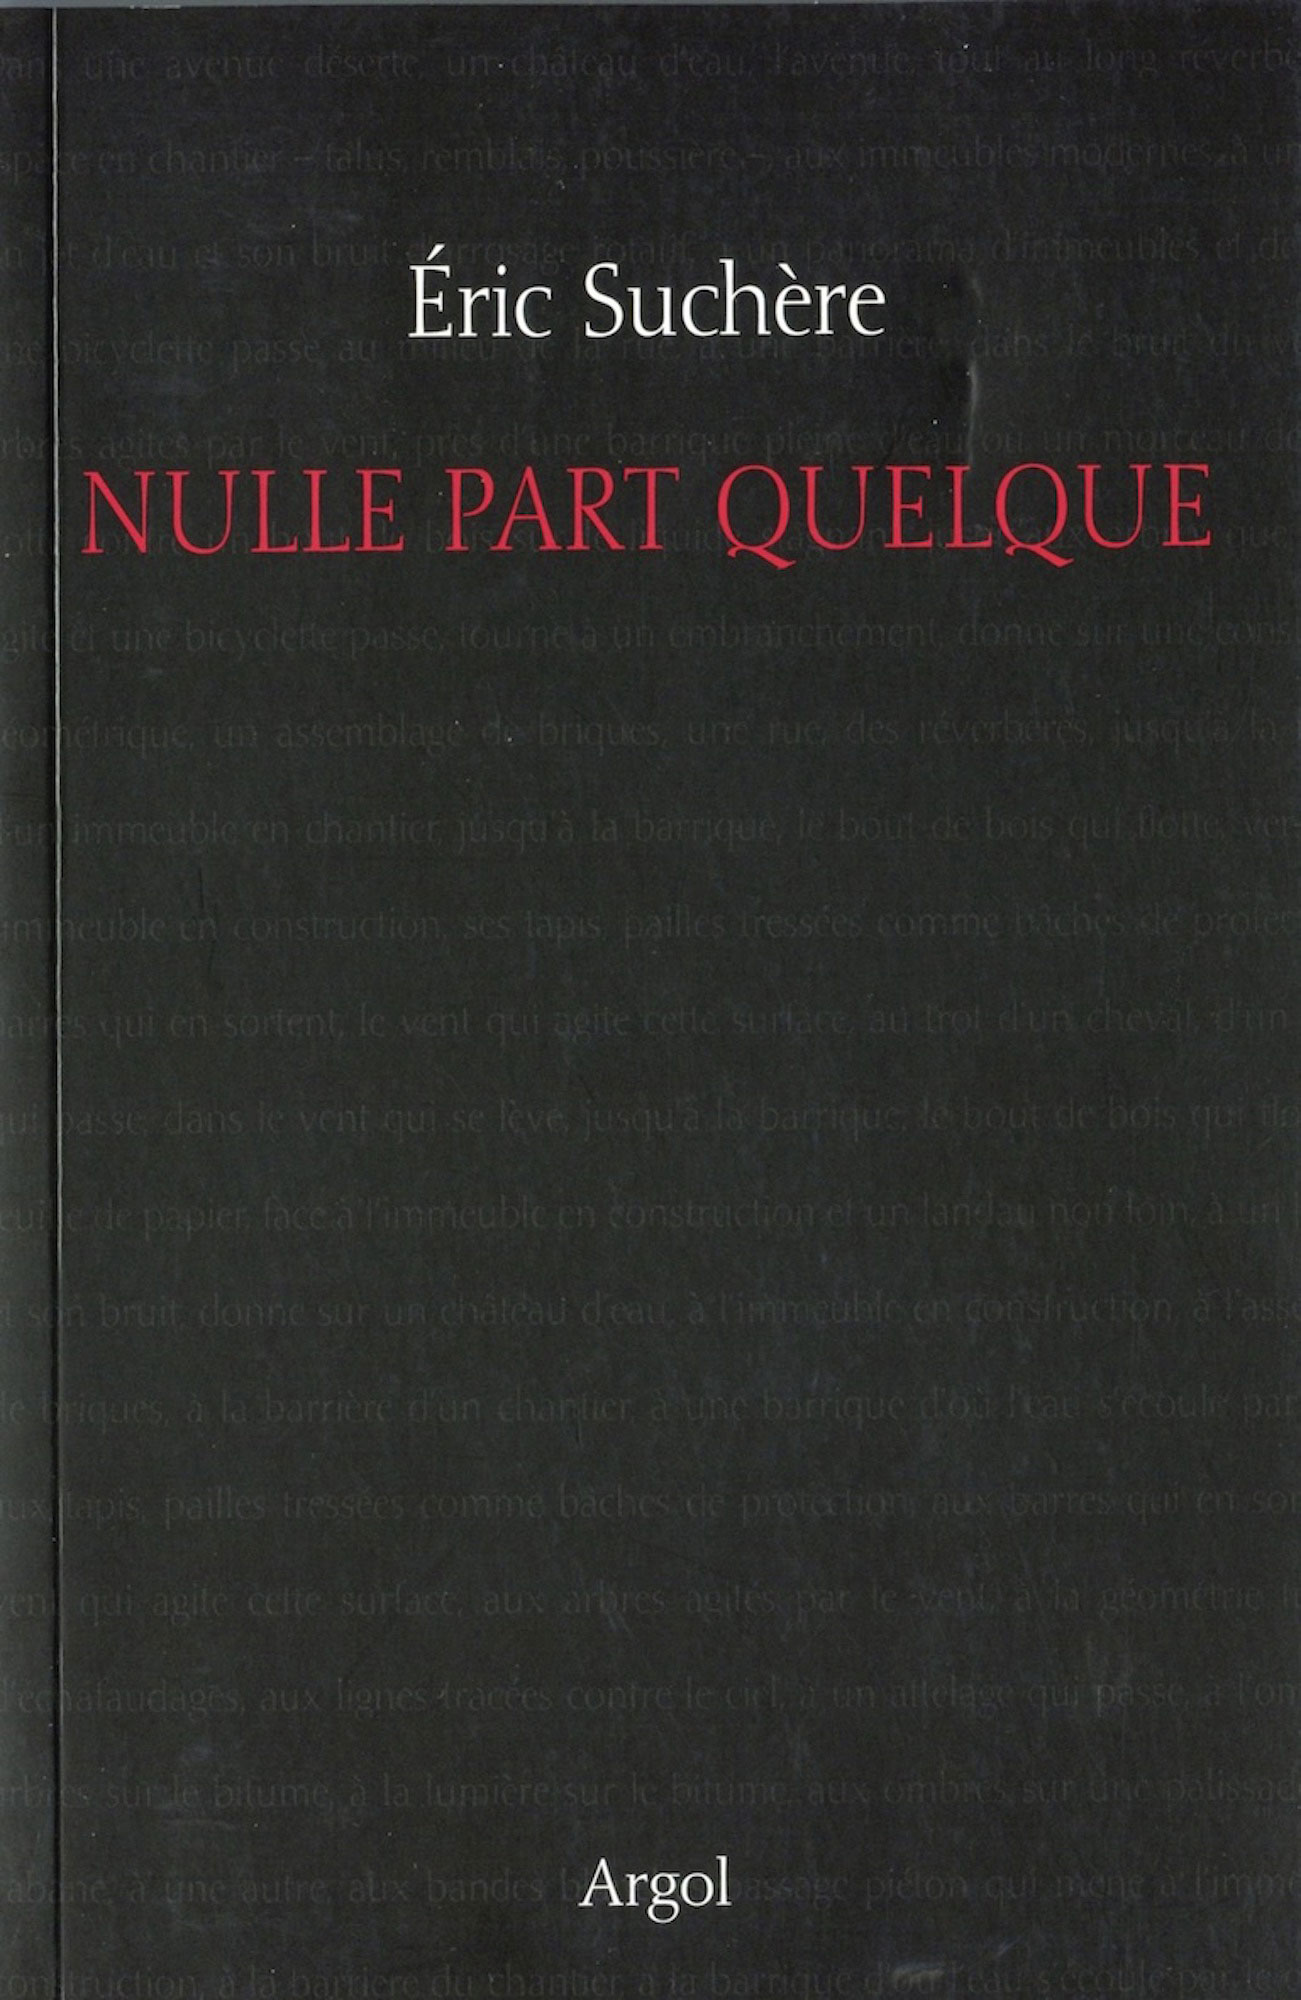 Éric Suchère, Nulle part quelque, Argol (couverture)